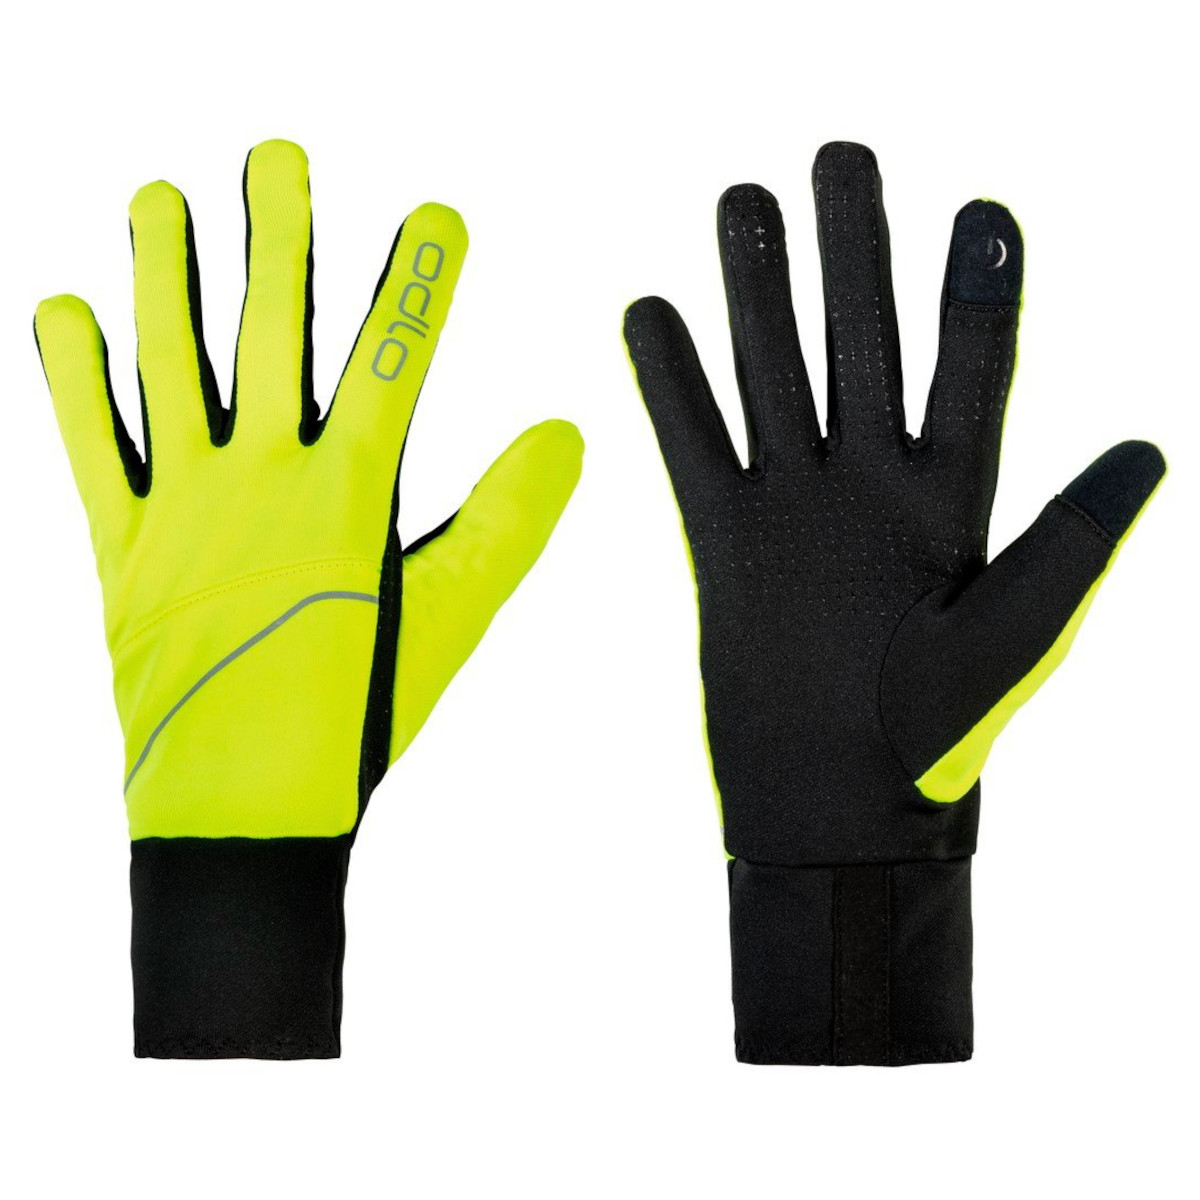 Bild von Odlo Intensity Safety Handschuhe - safety yellow